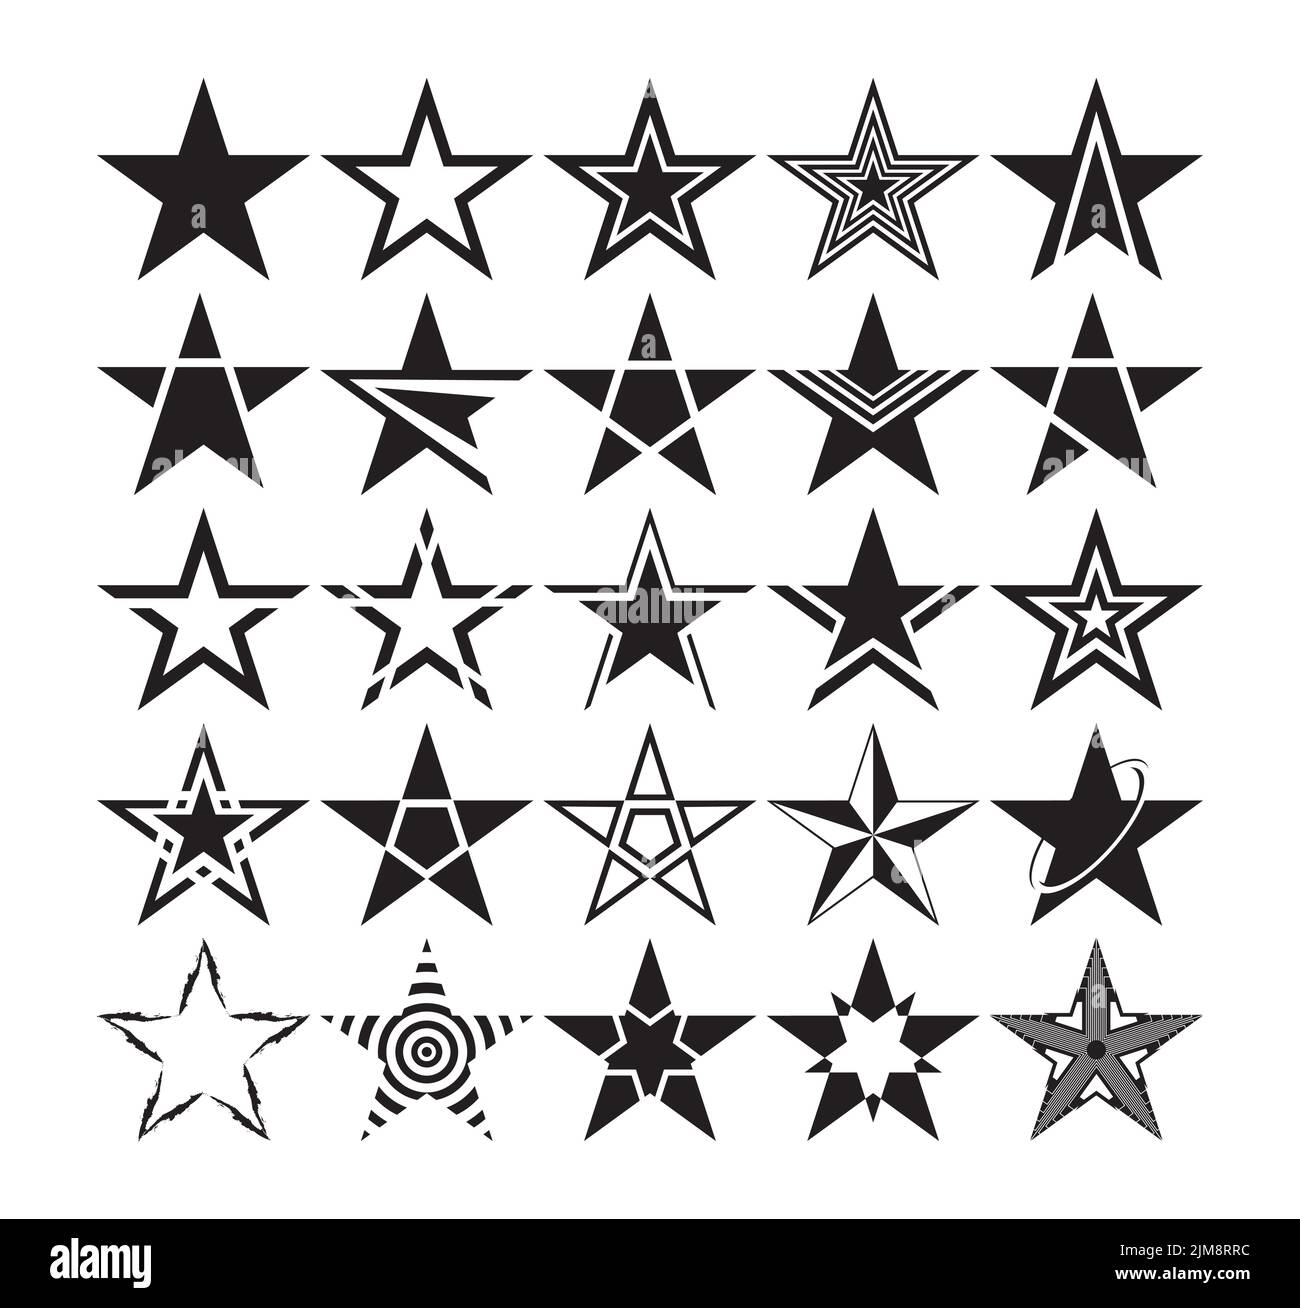 Conjunto de siluetas con forma de estrella. Diferentes dibujos clipart de estrella negra. Ilustración vectorial Ilustración del Vector